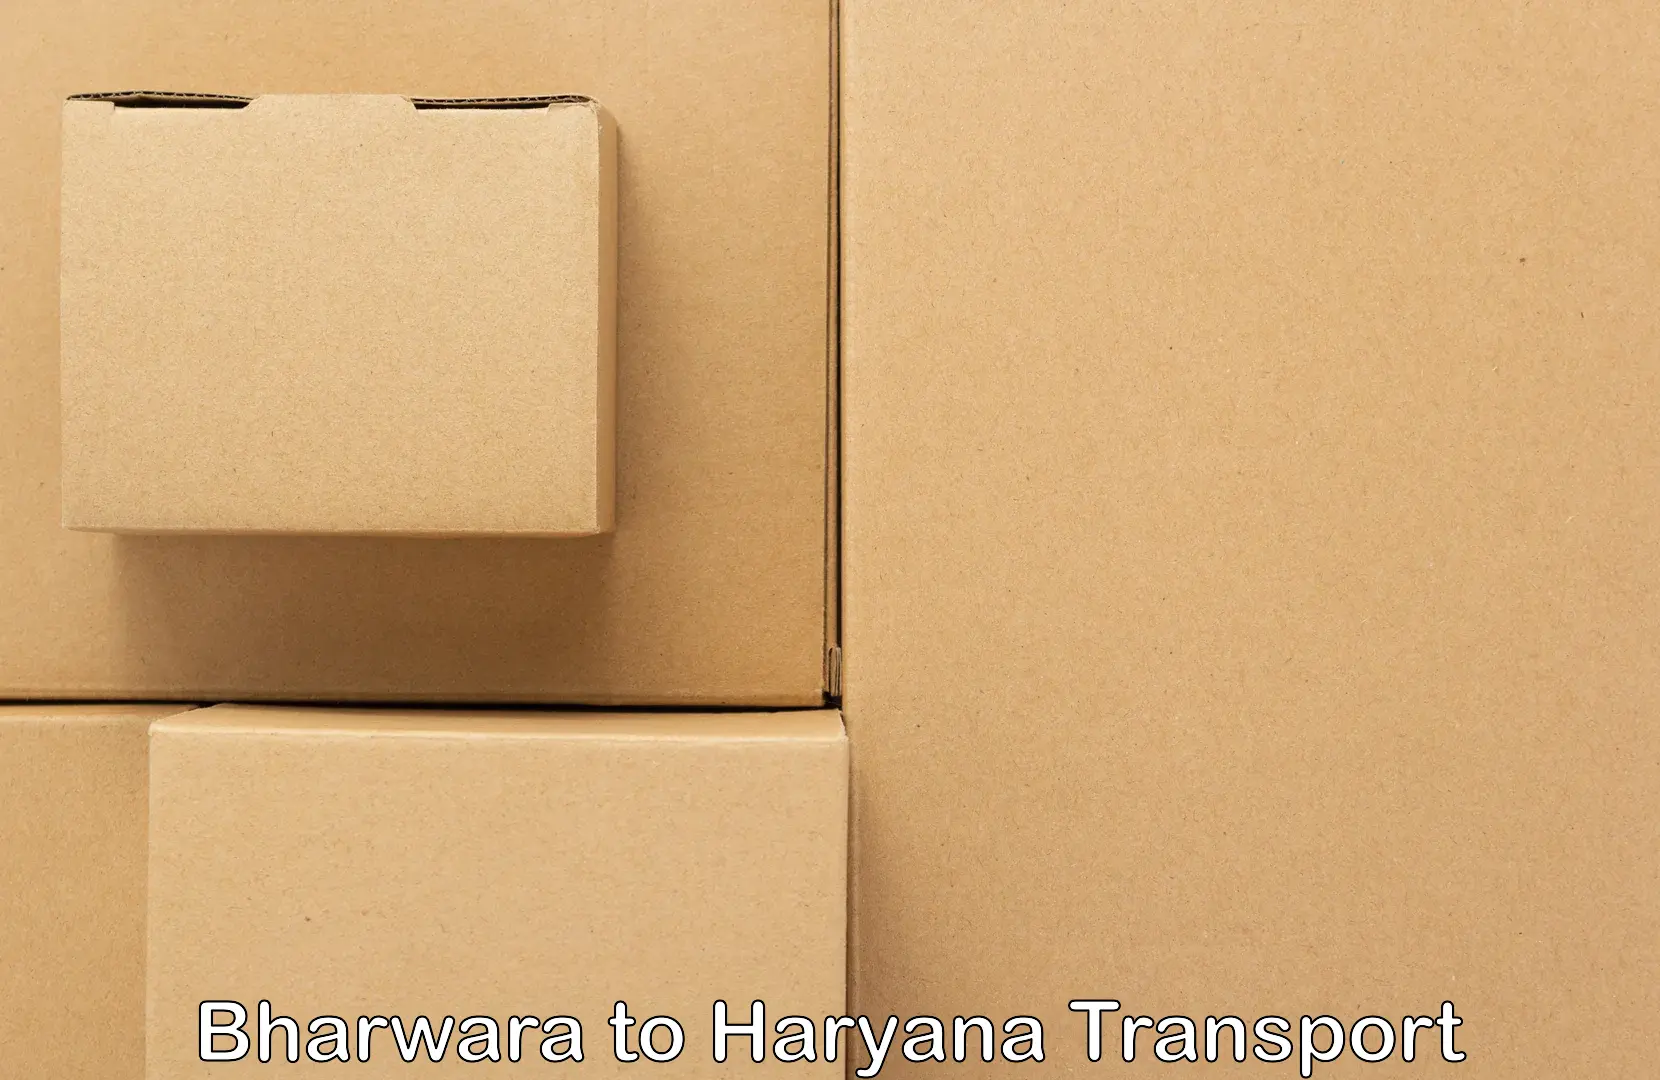 Pick up transport service Bharwara to Shahabad Markanda